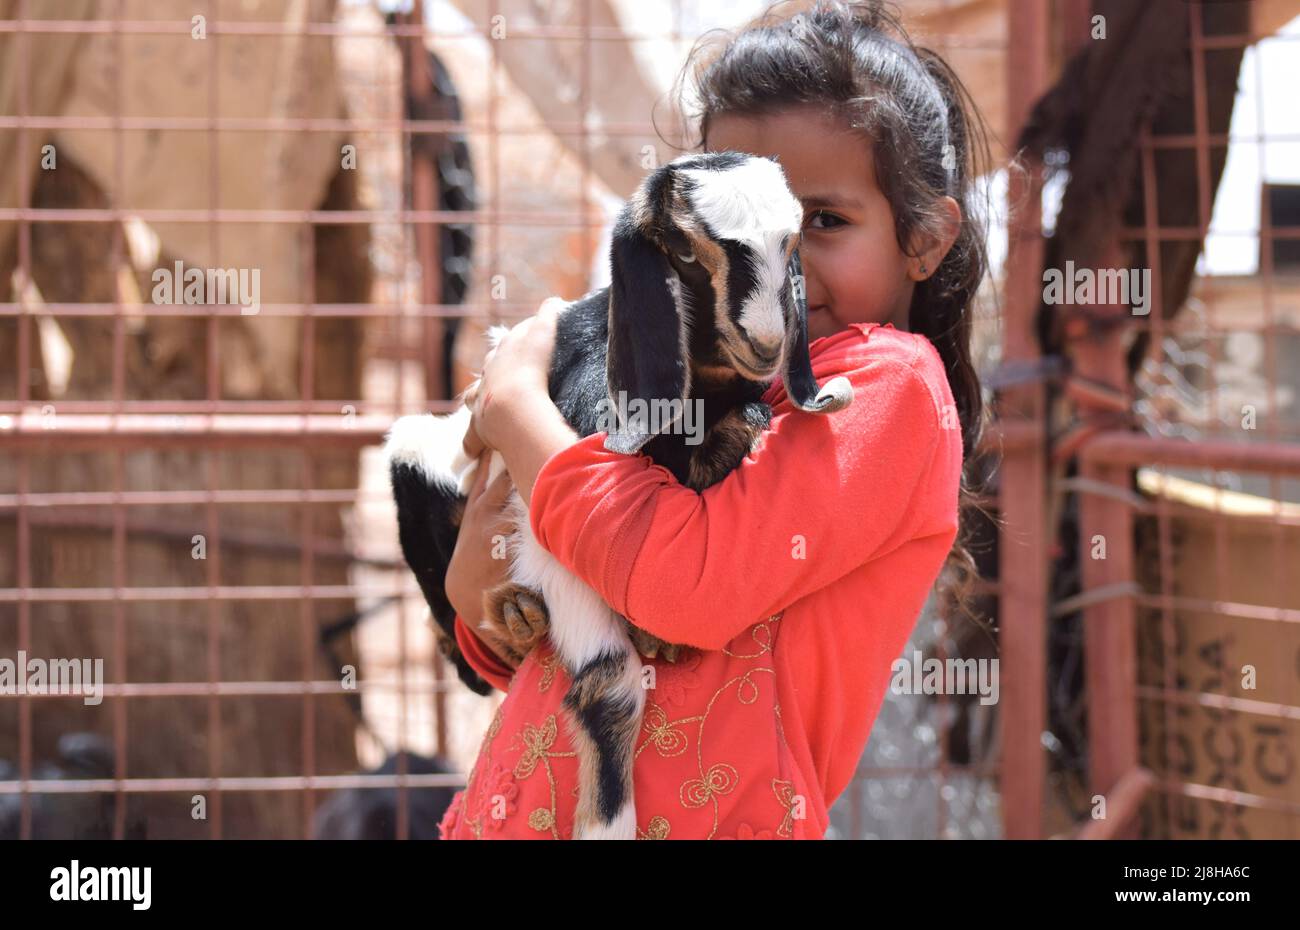 Ein kleines beduinenmädchen im Alter von 7 Jahren, das liebevoll ein Ziegenbaby in der Hand hält Stockfoto